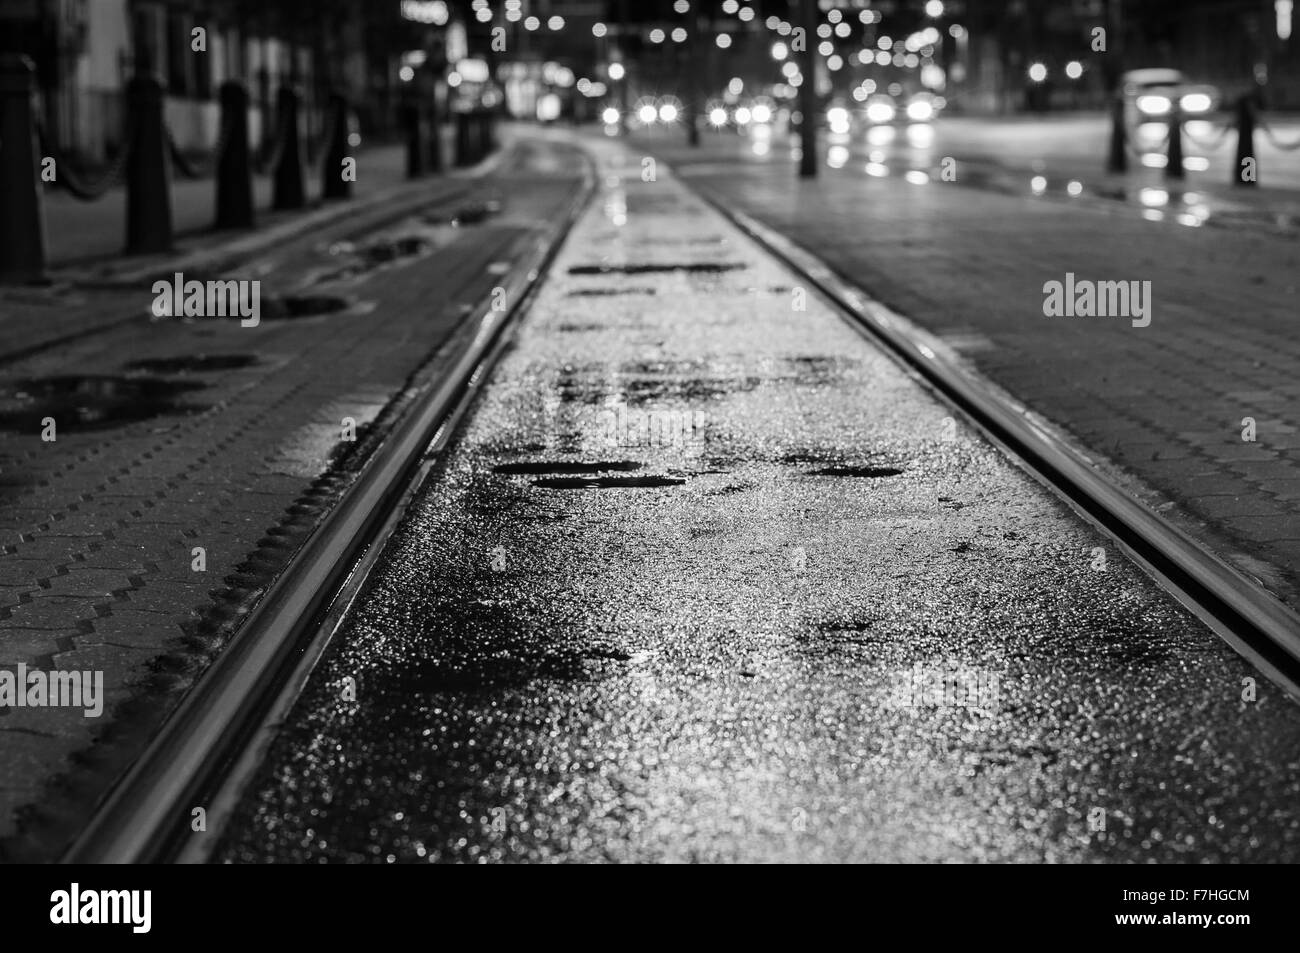 Nacht Blick auf nasse Straßenbahnschienen nach Regen. Verschwommene Ampel auf Hintergrund, schwarz / weiß-Ton Stockfoto